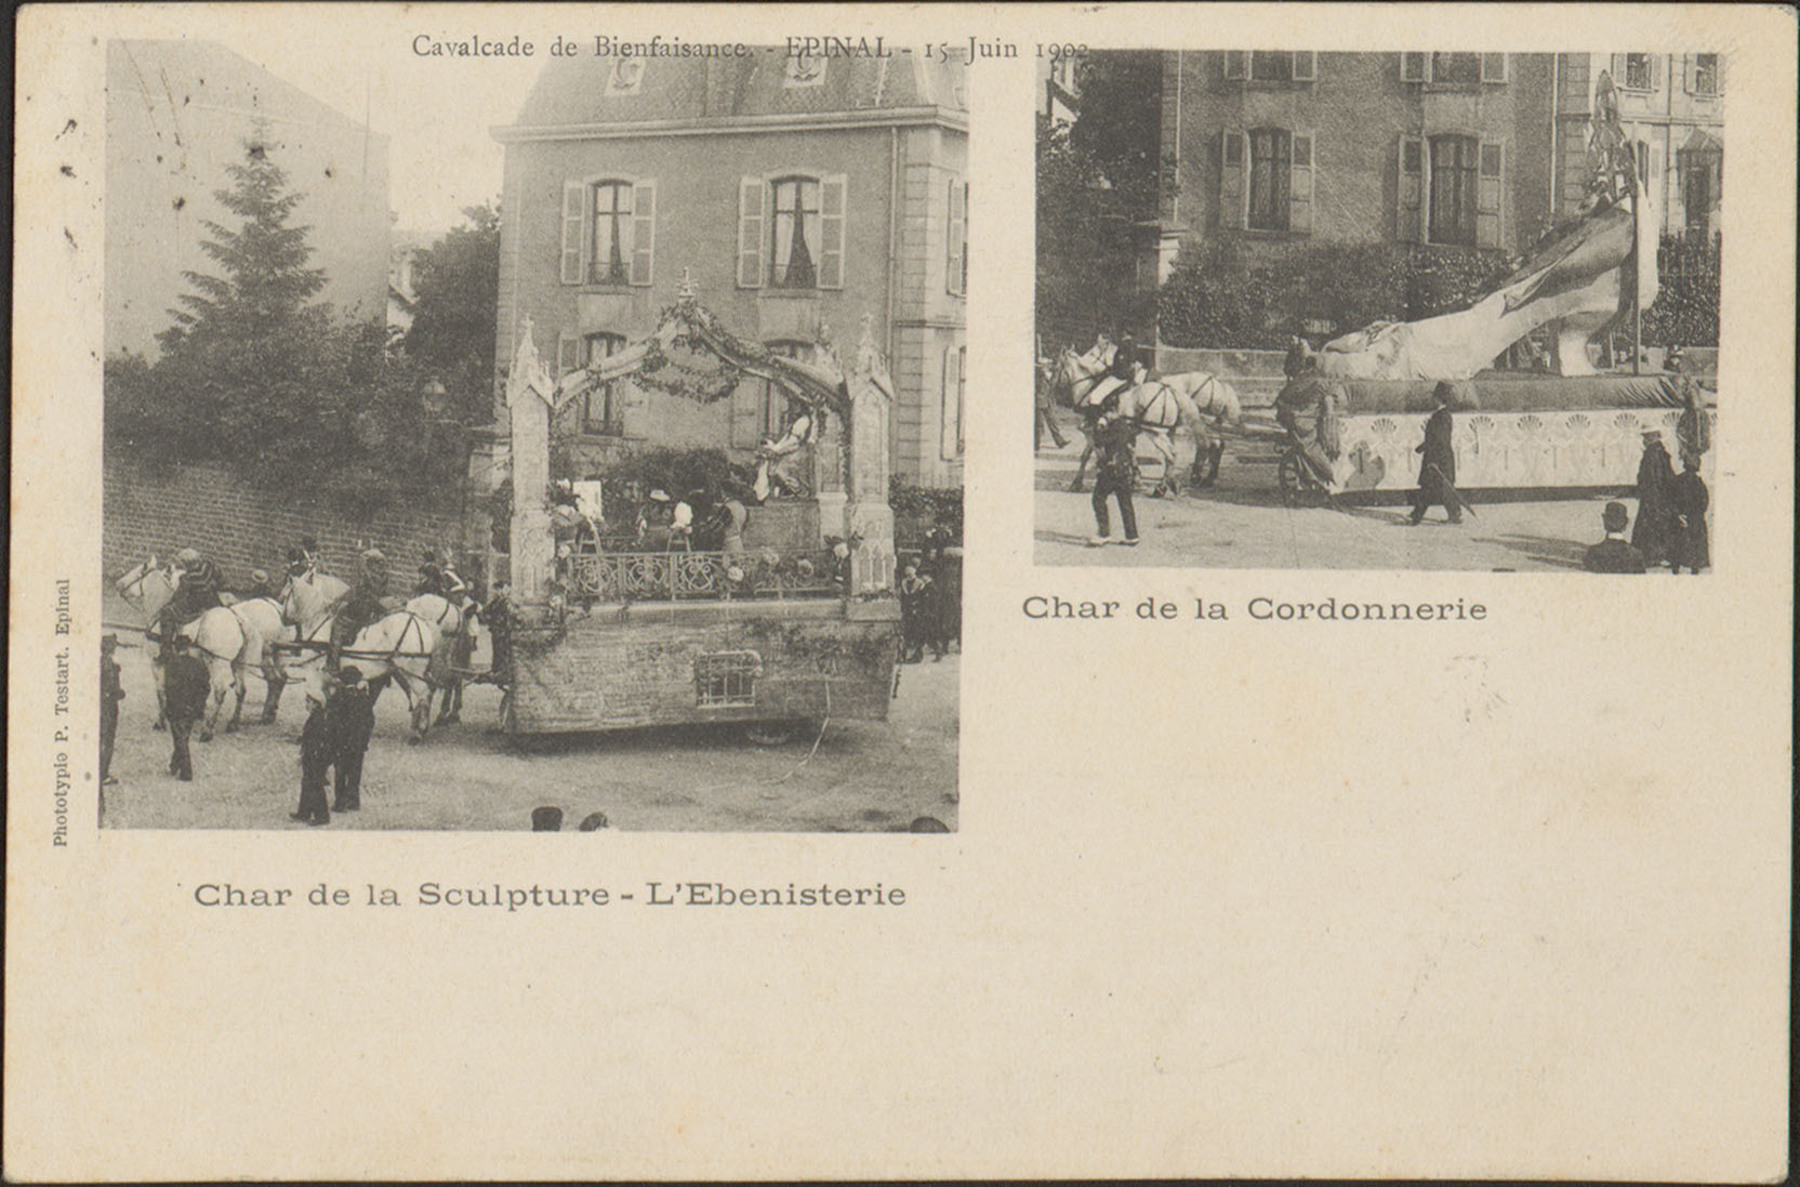 Contenu du Cavalcade de Bienfaisance, Épinal, 15 Juin 1902, Char de la Sculpture, L'Ebenisterie, Char de la Cordonnerie